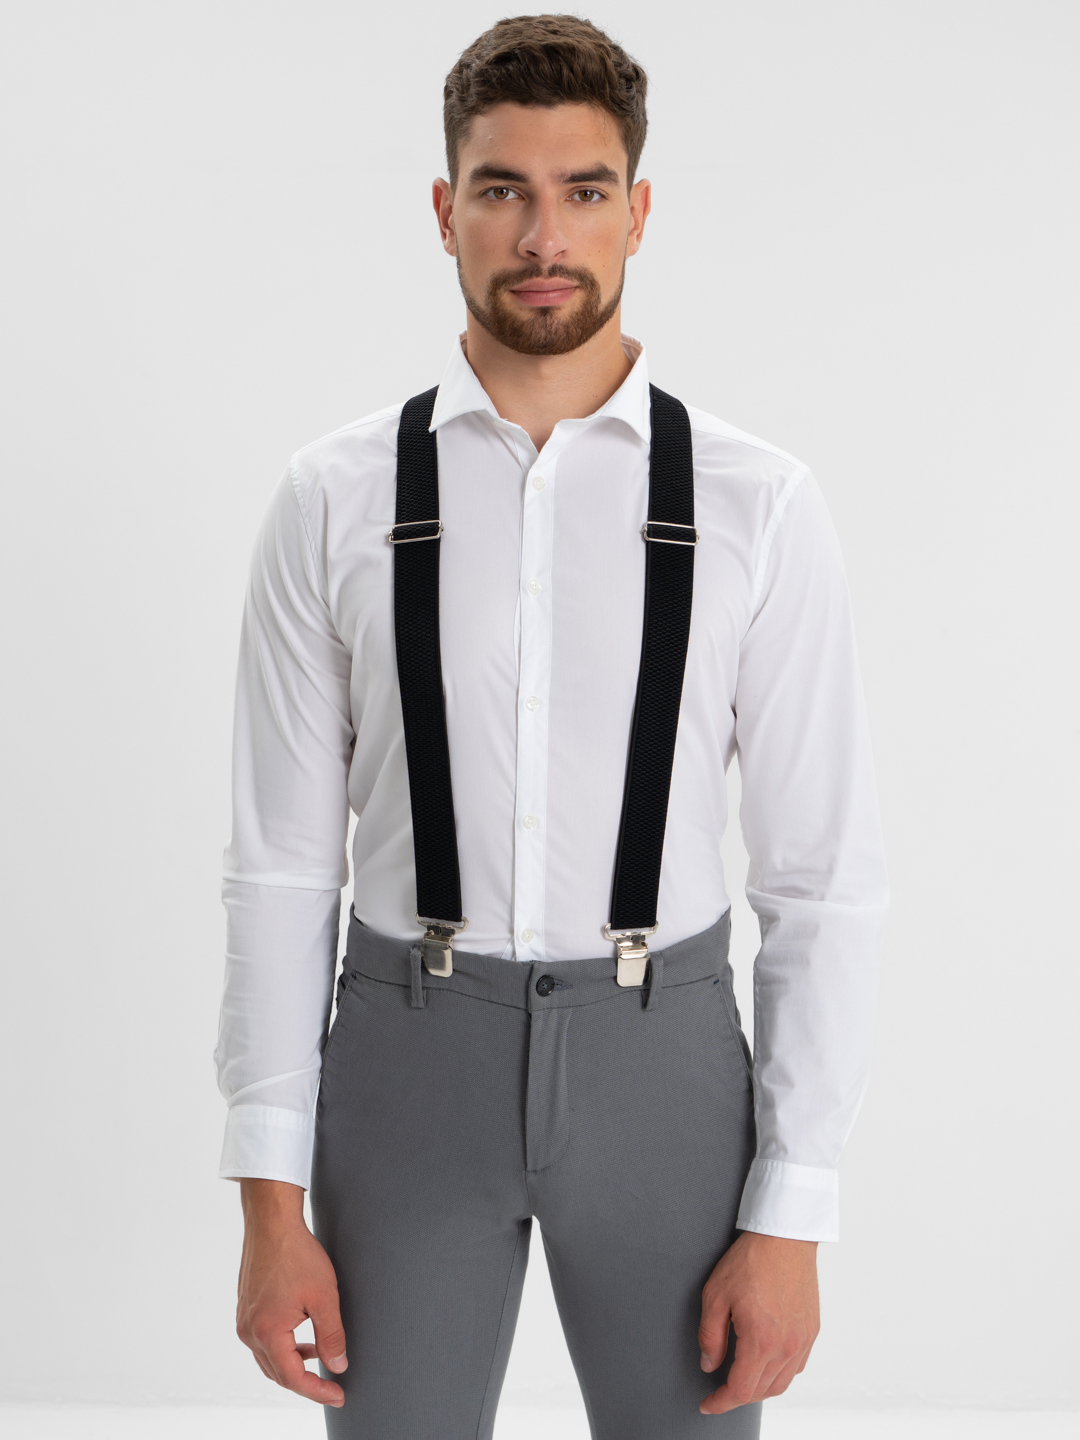 Подтяжки для брюк мужские, регулируемые, черные купить по цене 384.75 ₽ винтернет-магазине KazanExpress